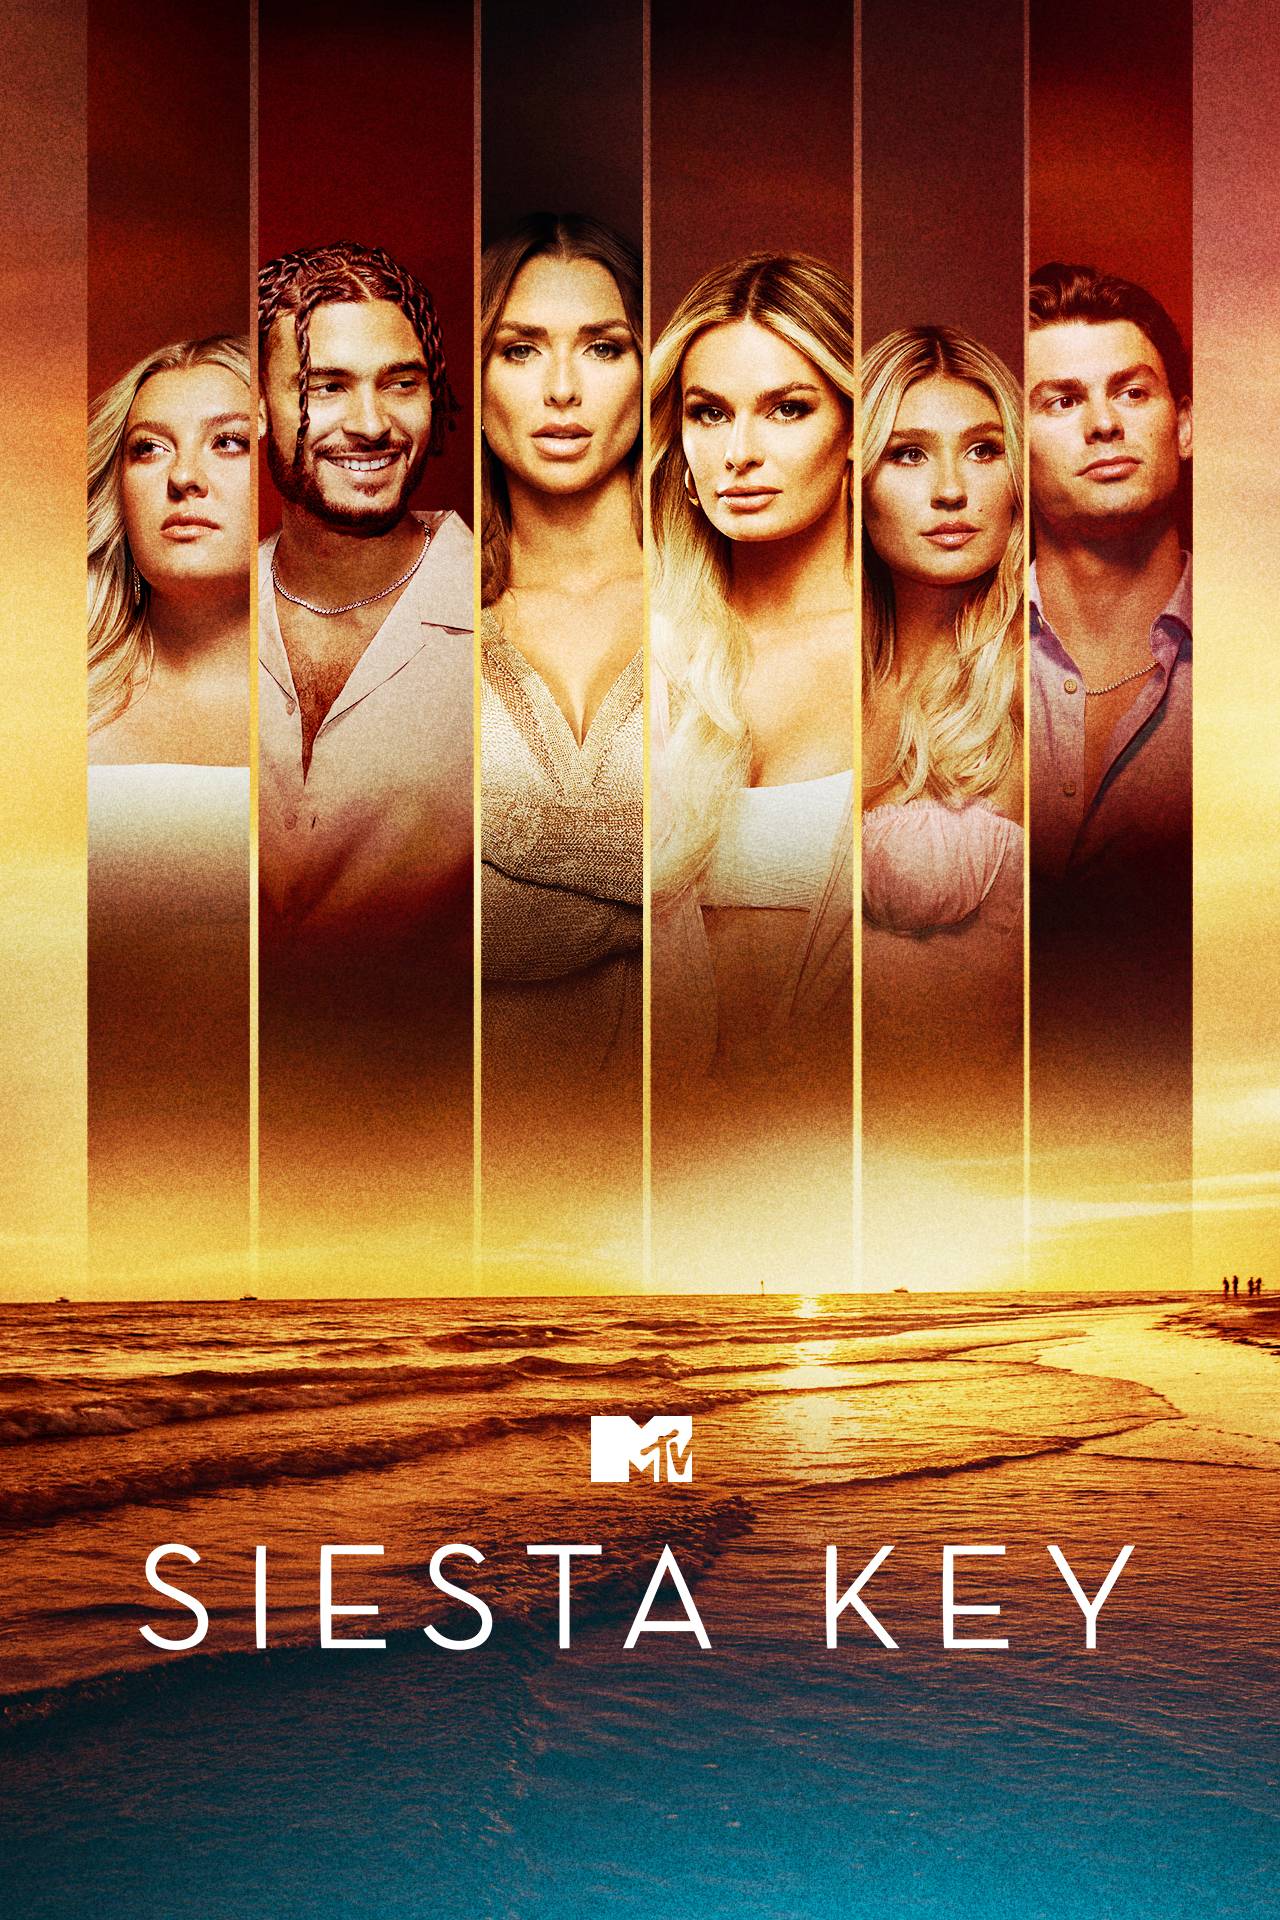 siesta key season 5 watch online